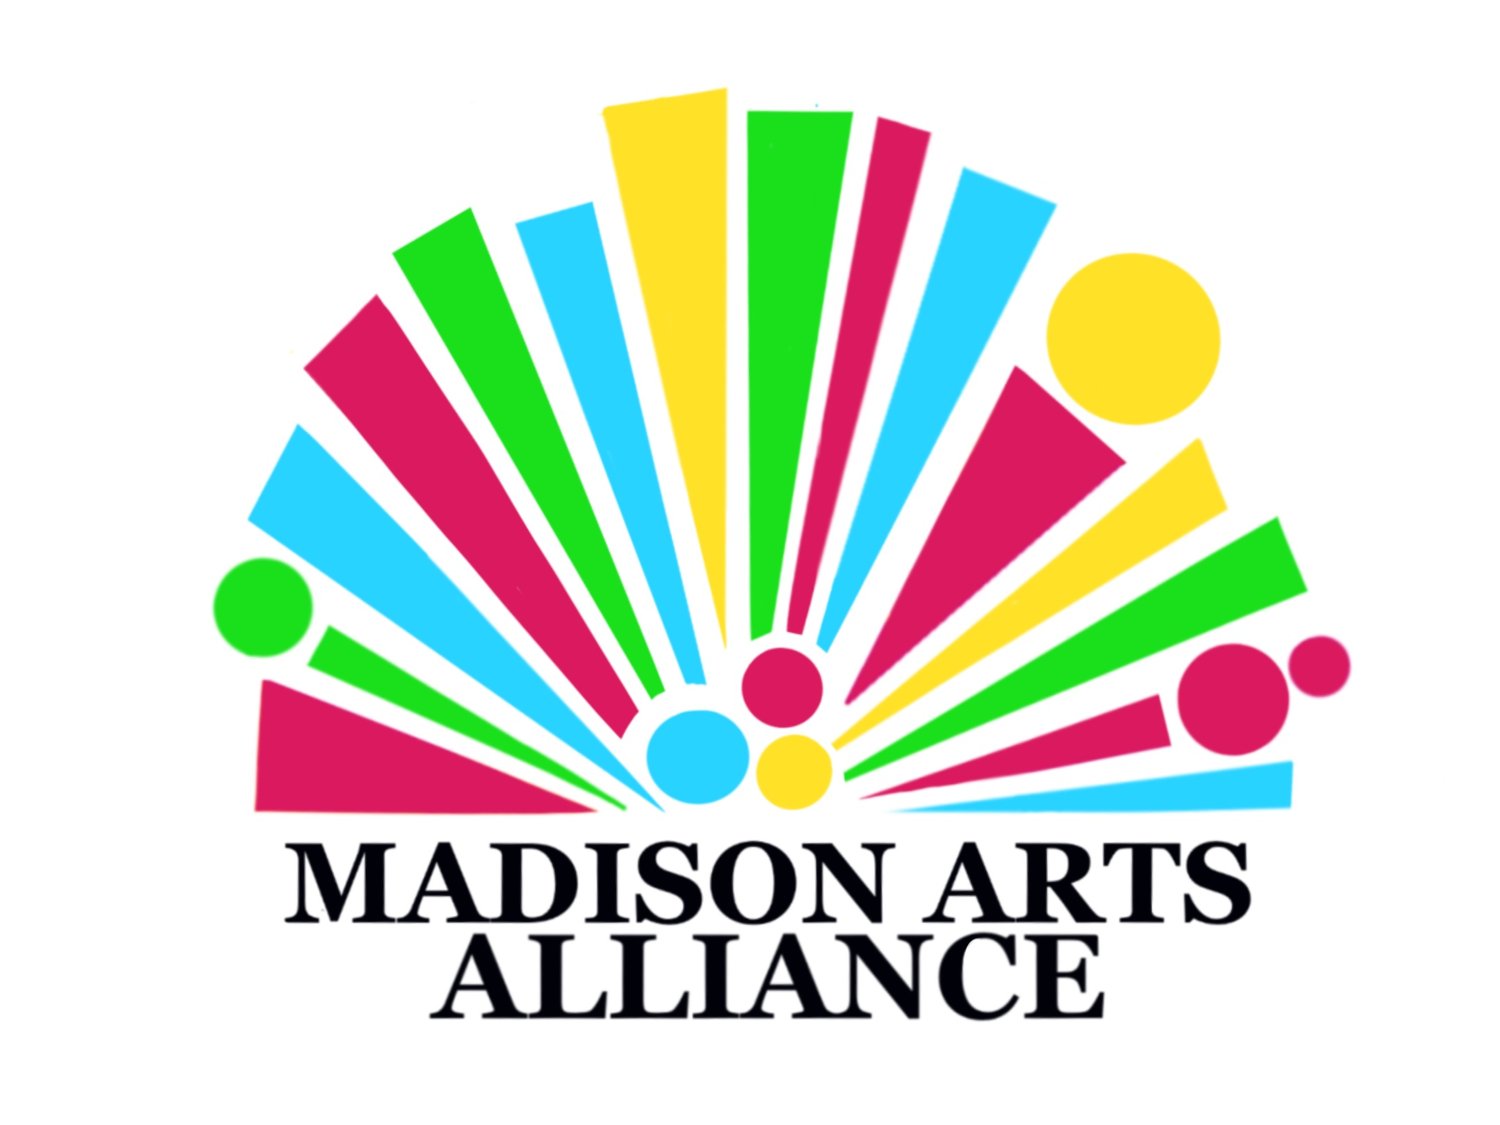 Madison Arts Alliance